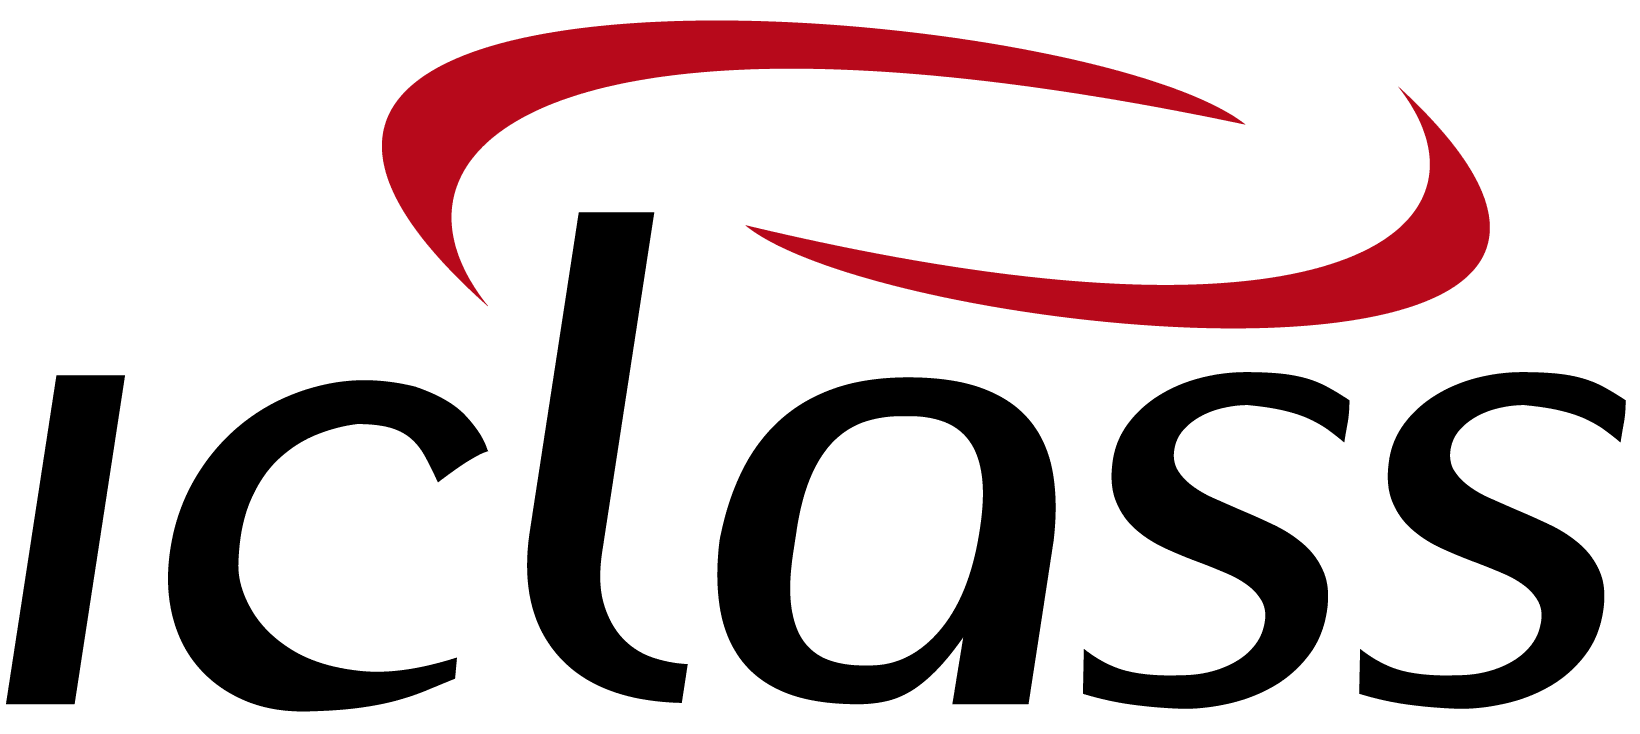 logo IClass Software de Ordem de Serviço Online Software Para Empresas de Dedetização | IClass